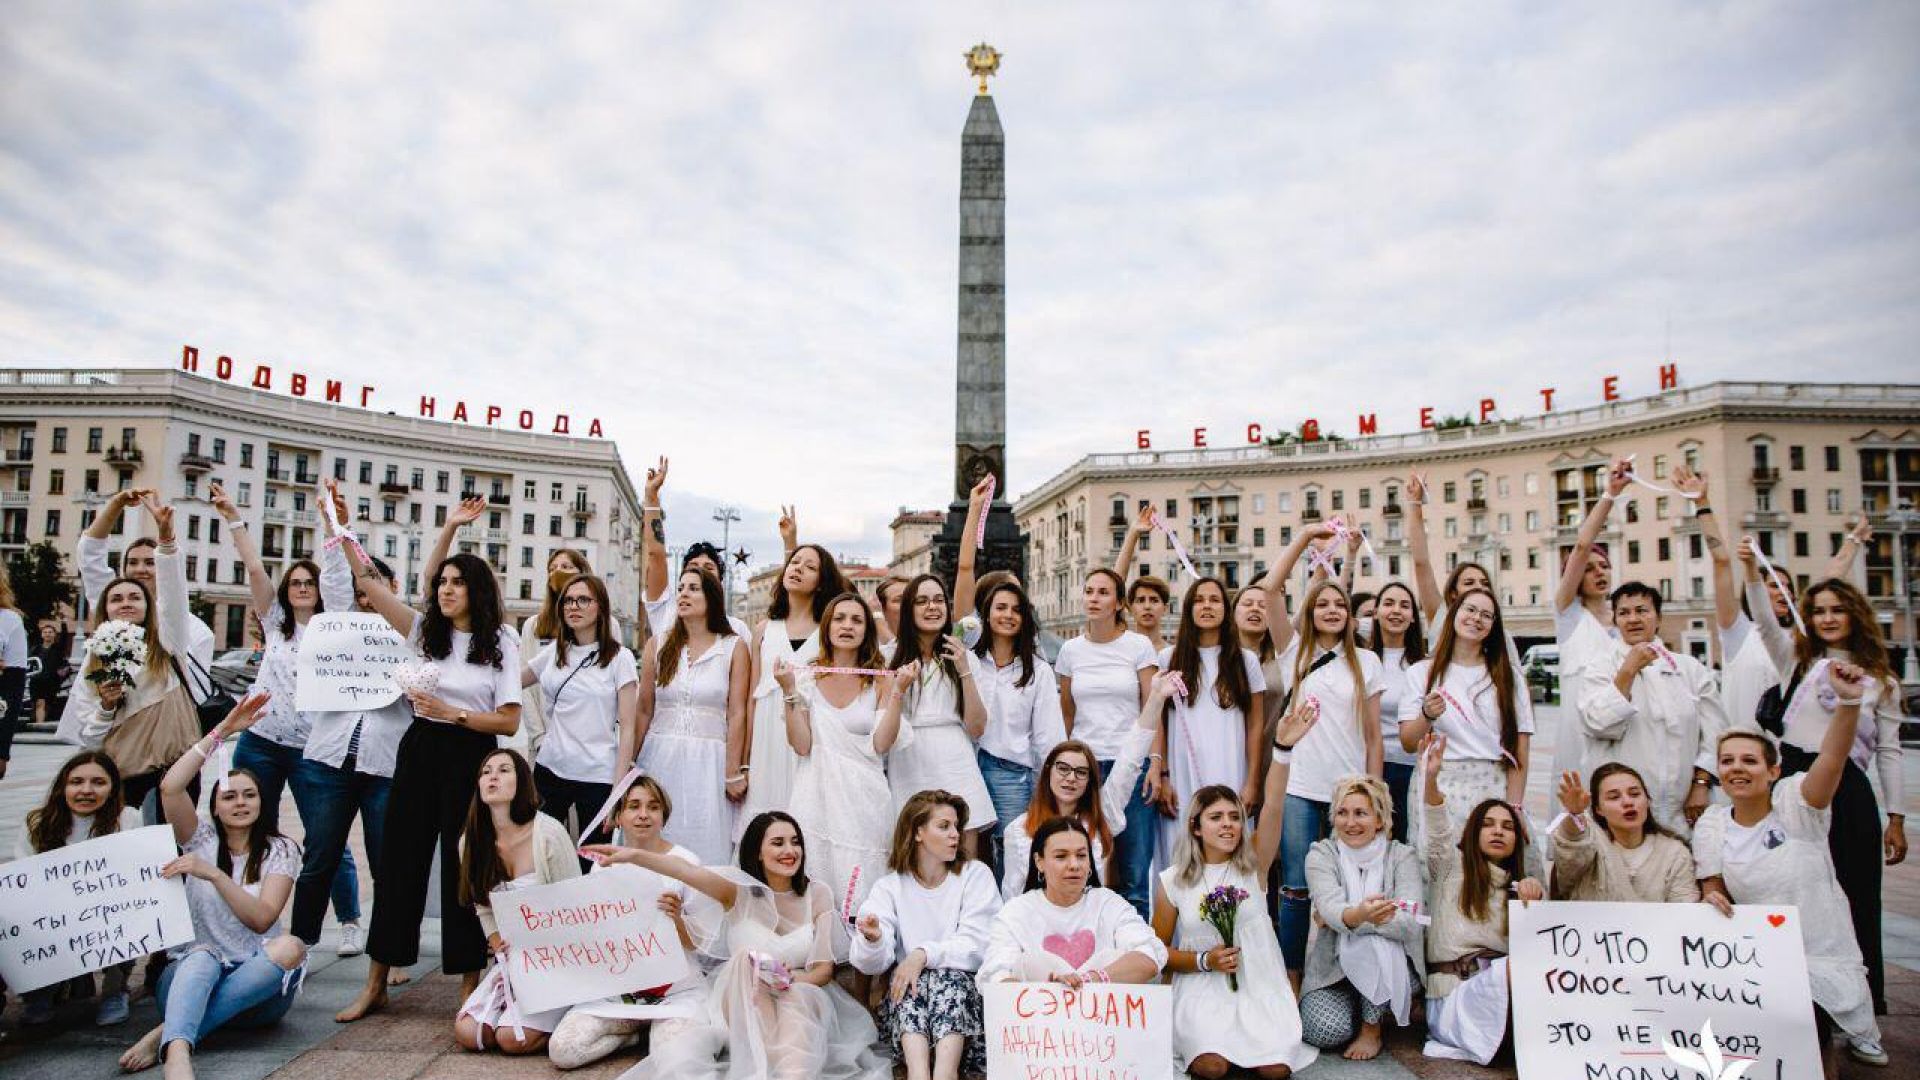 "Жените в бяло", които протестират по цял свят и не искат само да готвят супа - #she4belarus